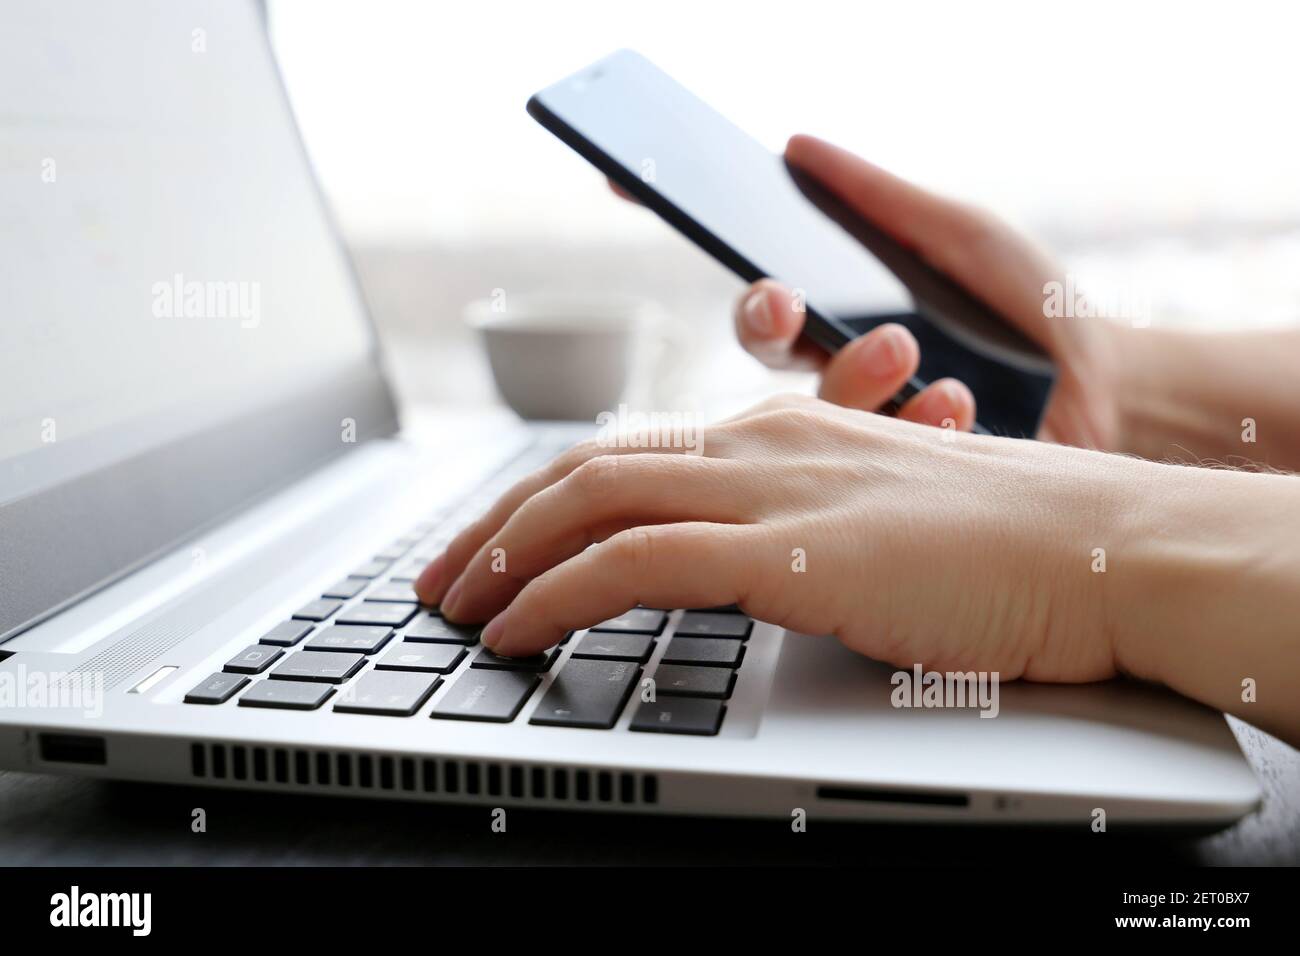 Femme avec un smartphone assis au clavier de l'ordinateur portable près de la fenêtre. Concept de communication en ligne, travail au bureau ou à domicile et paiement Banque D'Images